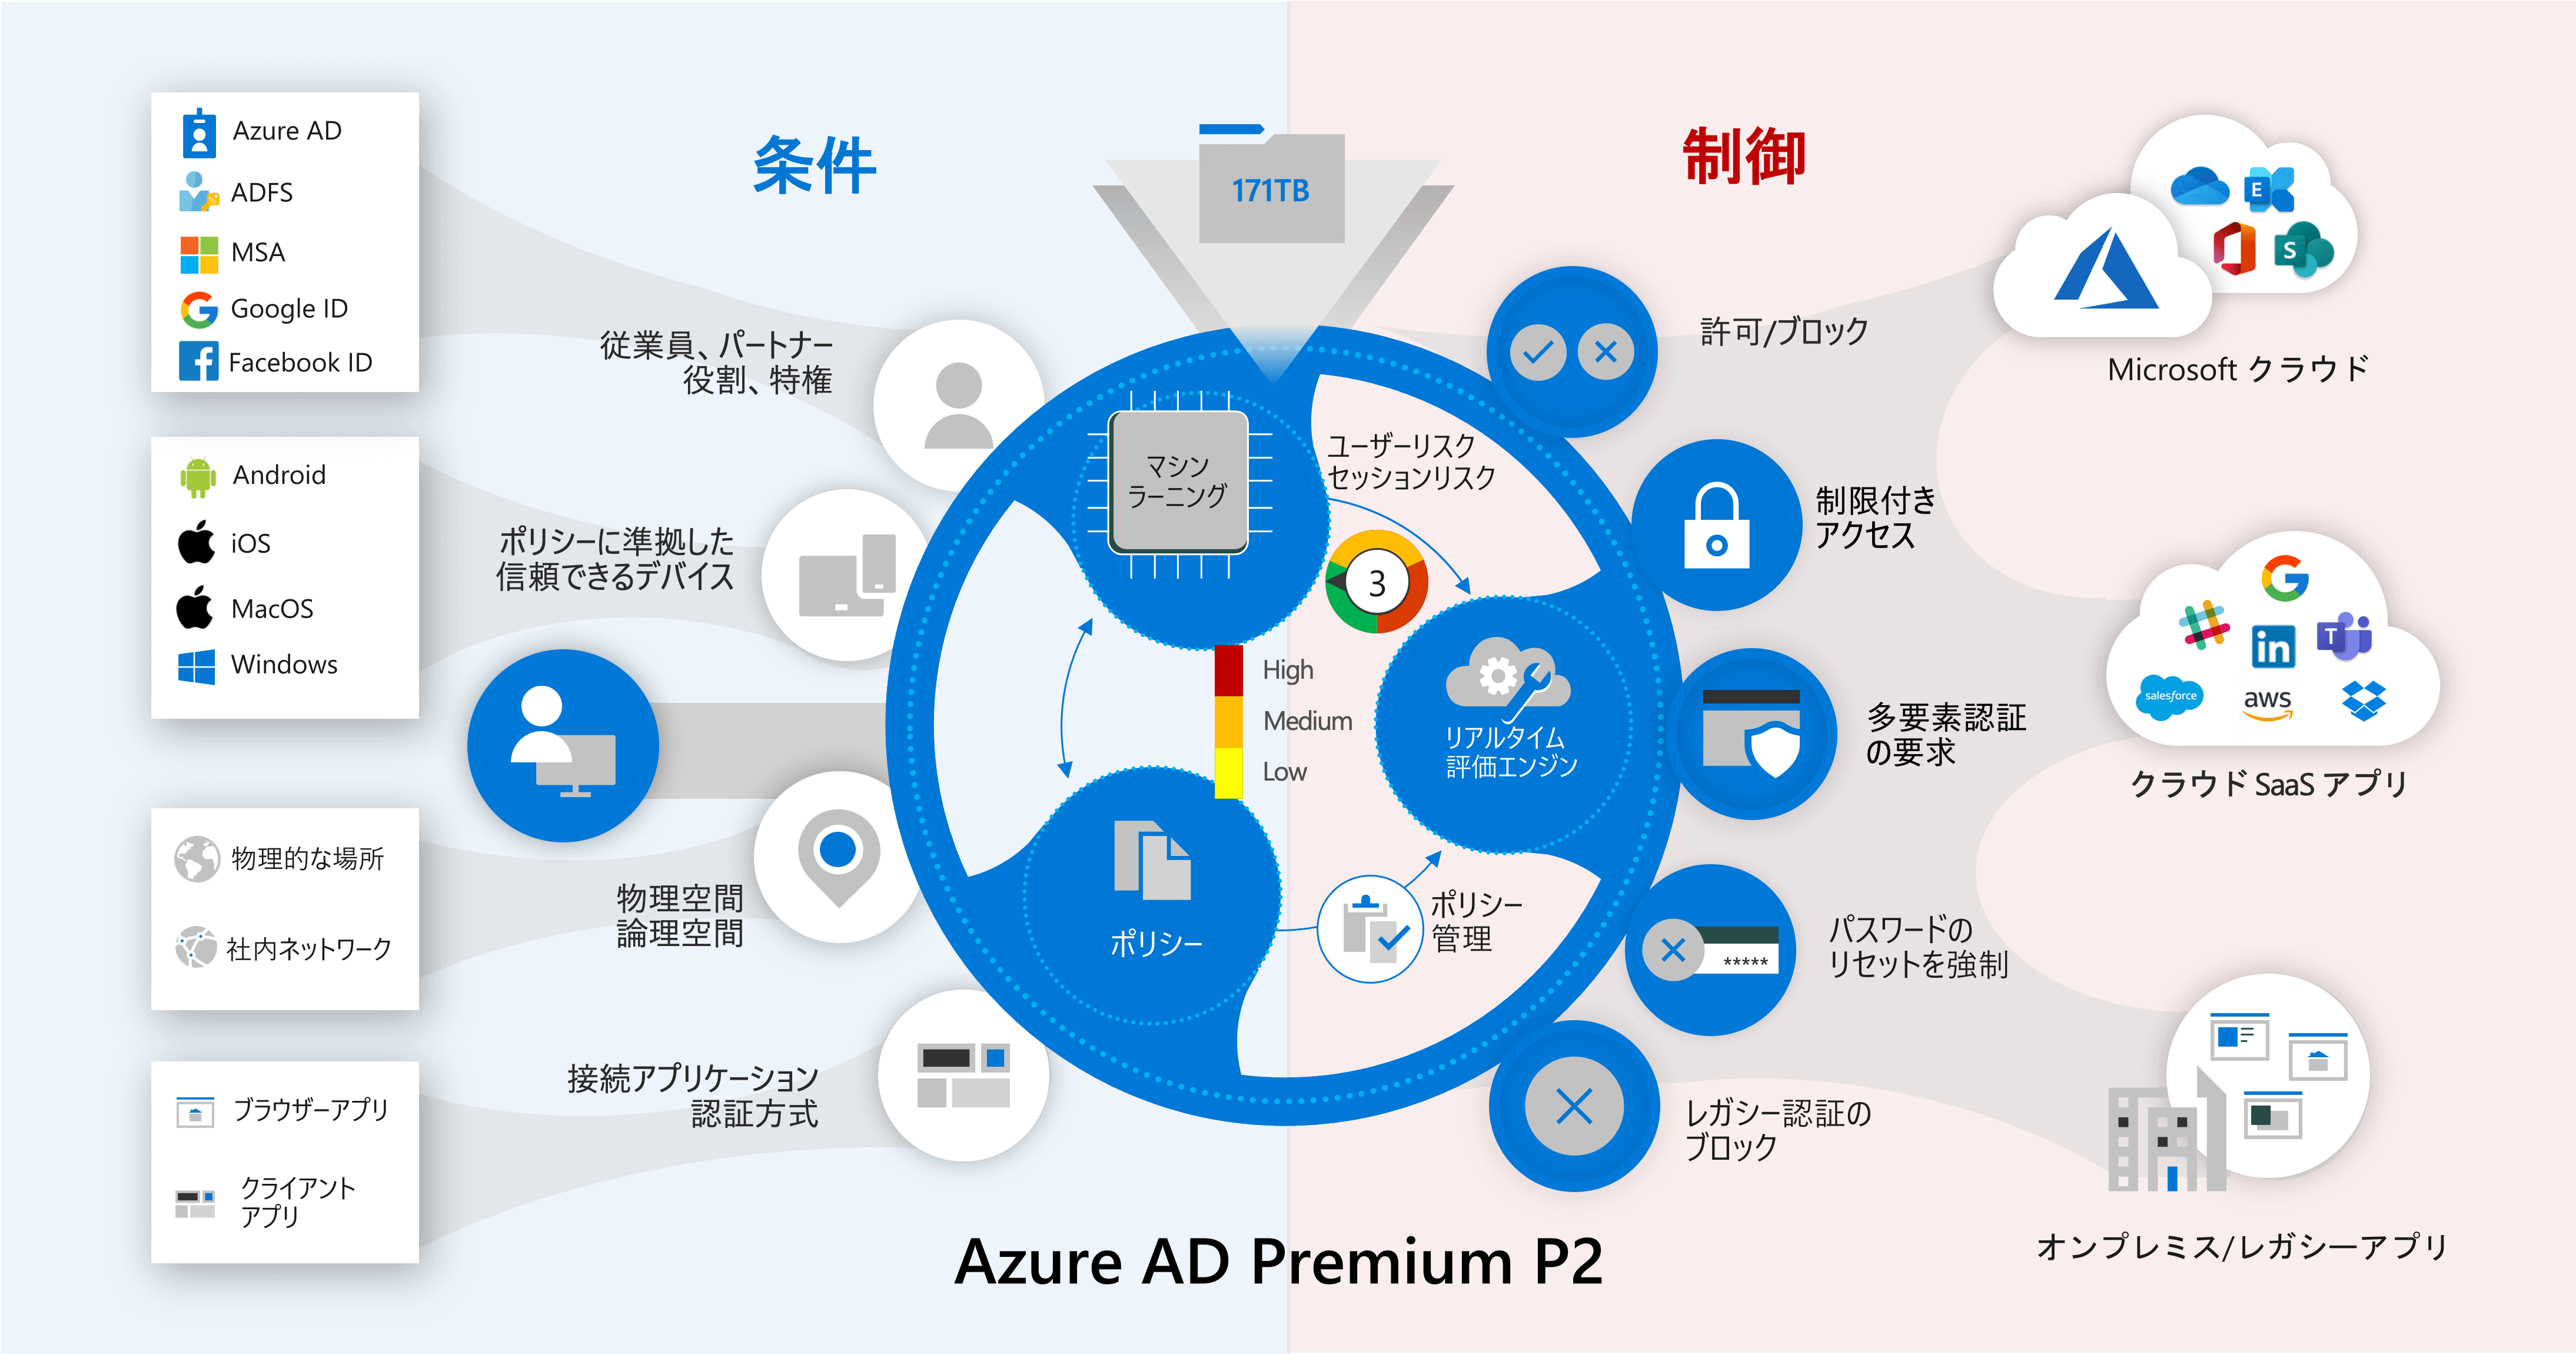 Azure AD Premium P2